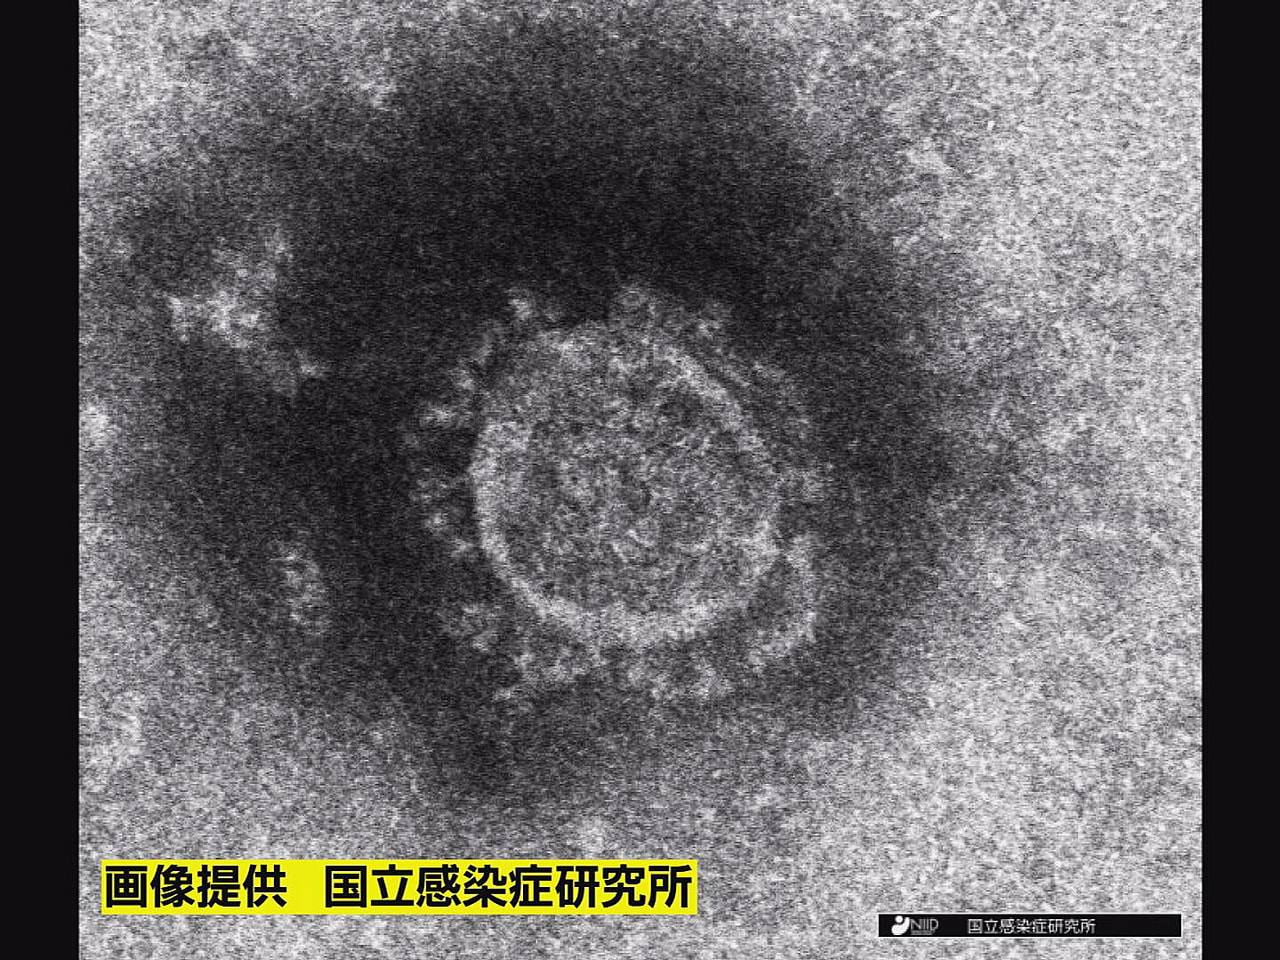 岐阜県は１４日、新型コロナウイルスの感染が新たに１人確認されたと発表しました。 ...